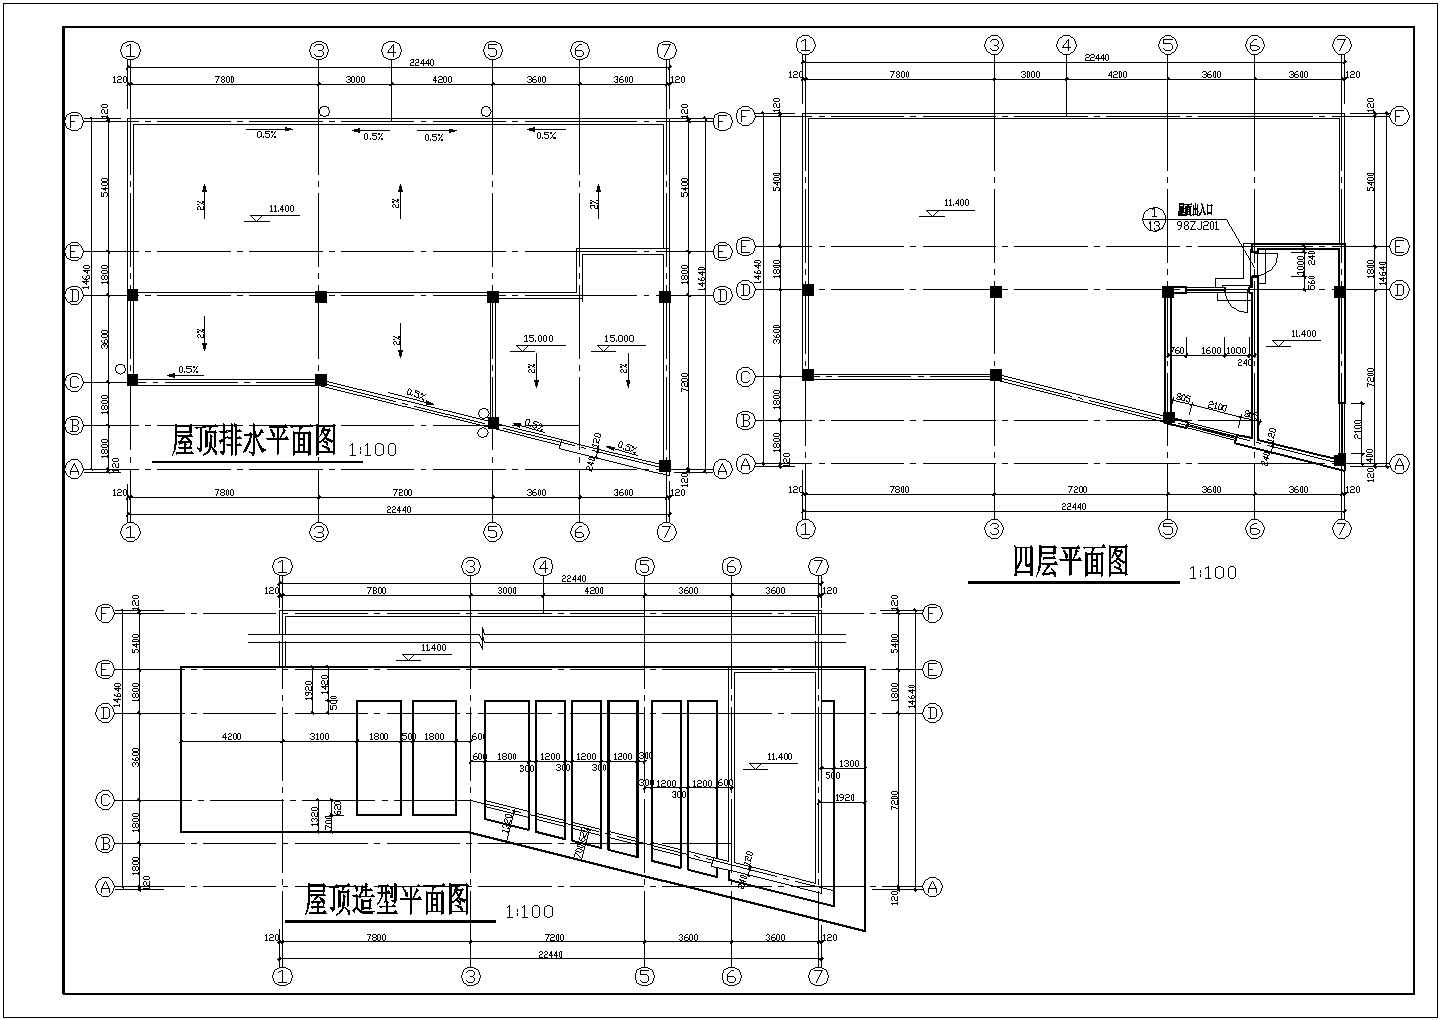 长22.44米 宽14.64米 4层小汽车站建施图【各层平面 屋顶造型及排水平面 4立面】